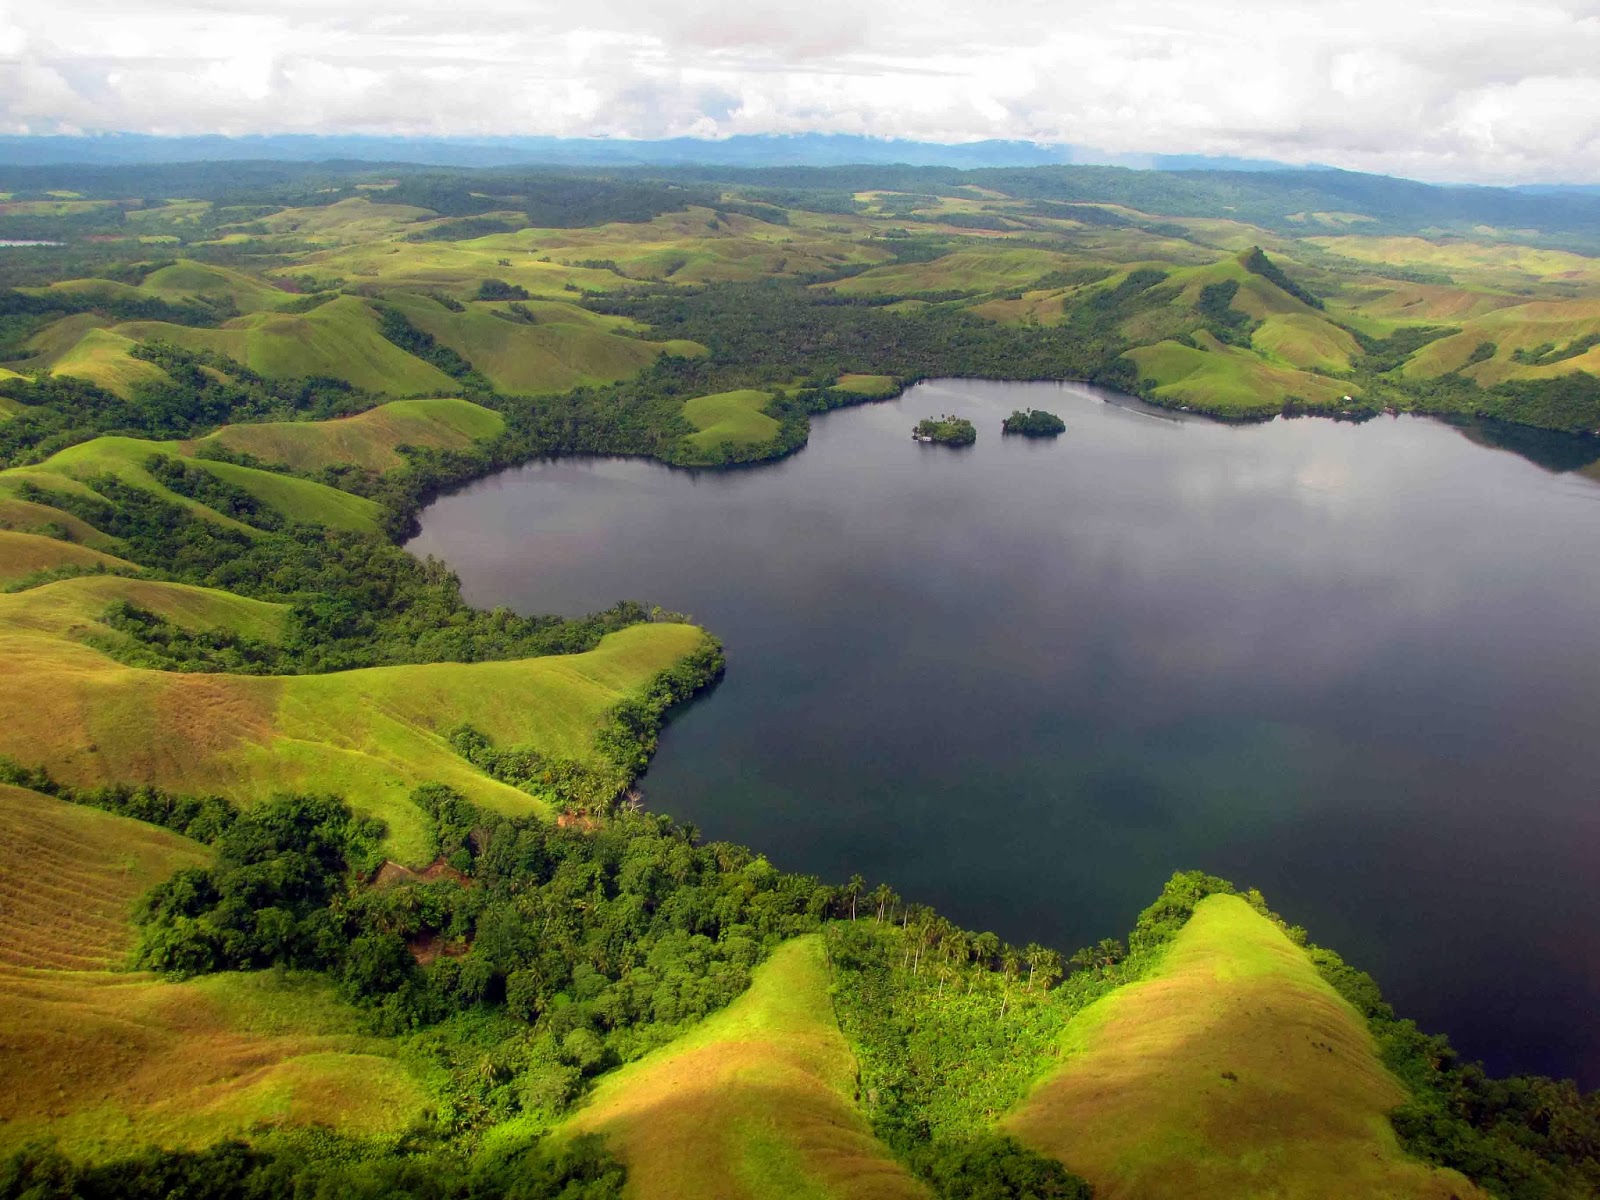 Tempat Wisata Di Papua Yang Paling Banyak Di kunjungi